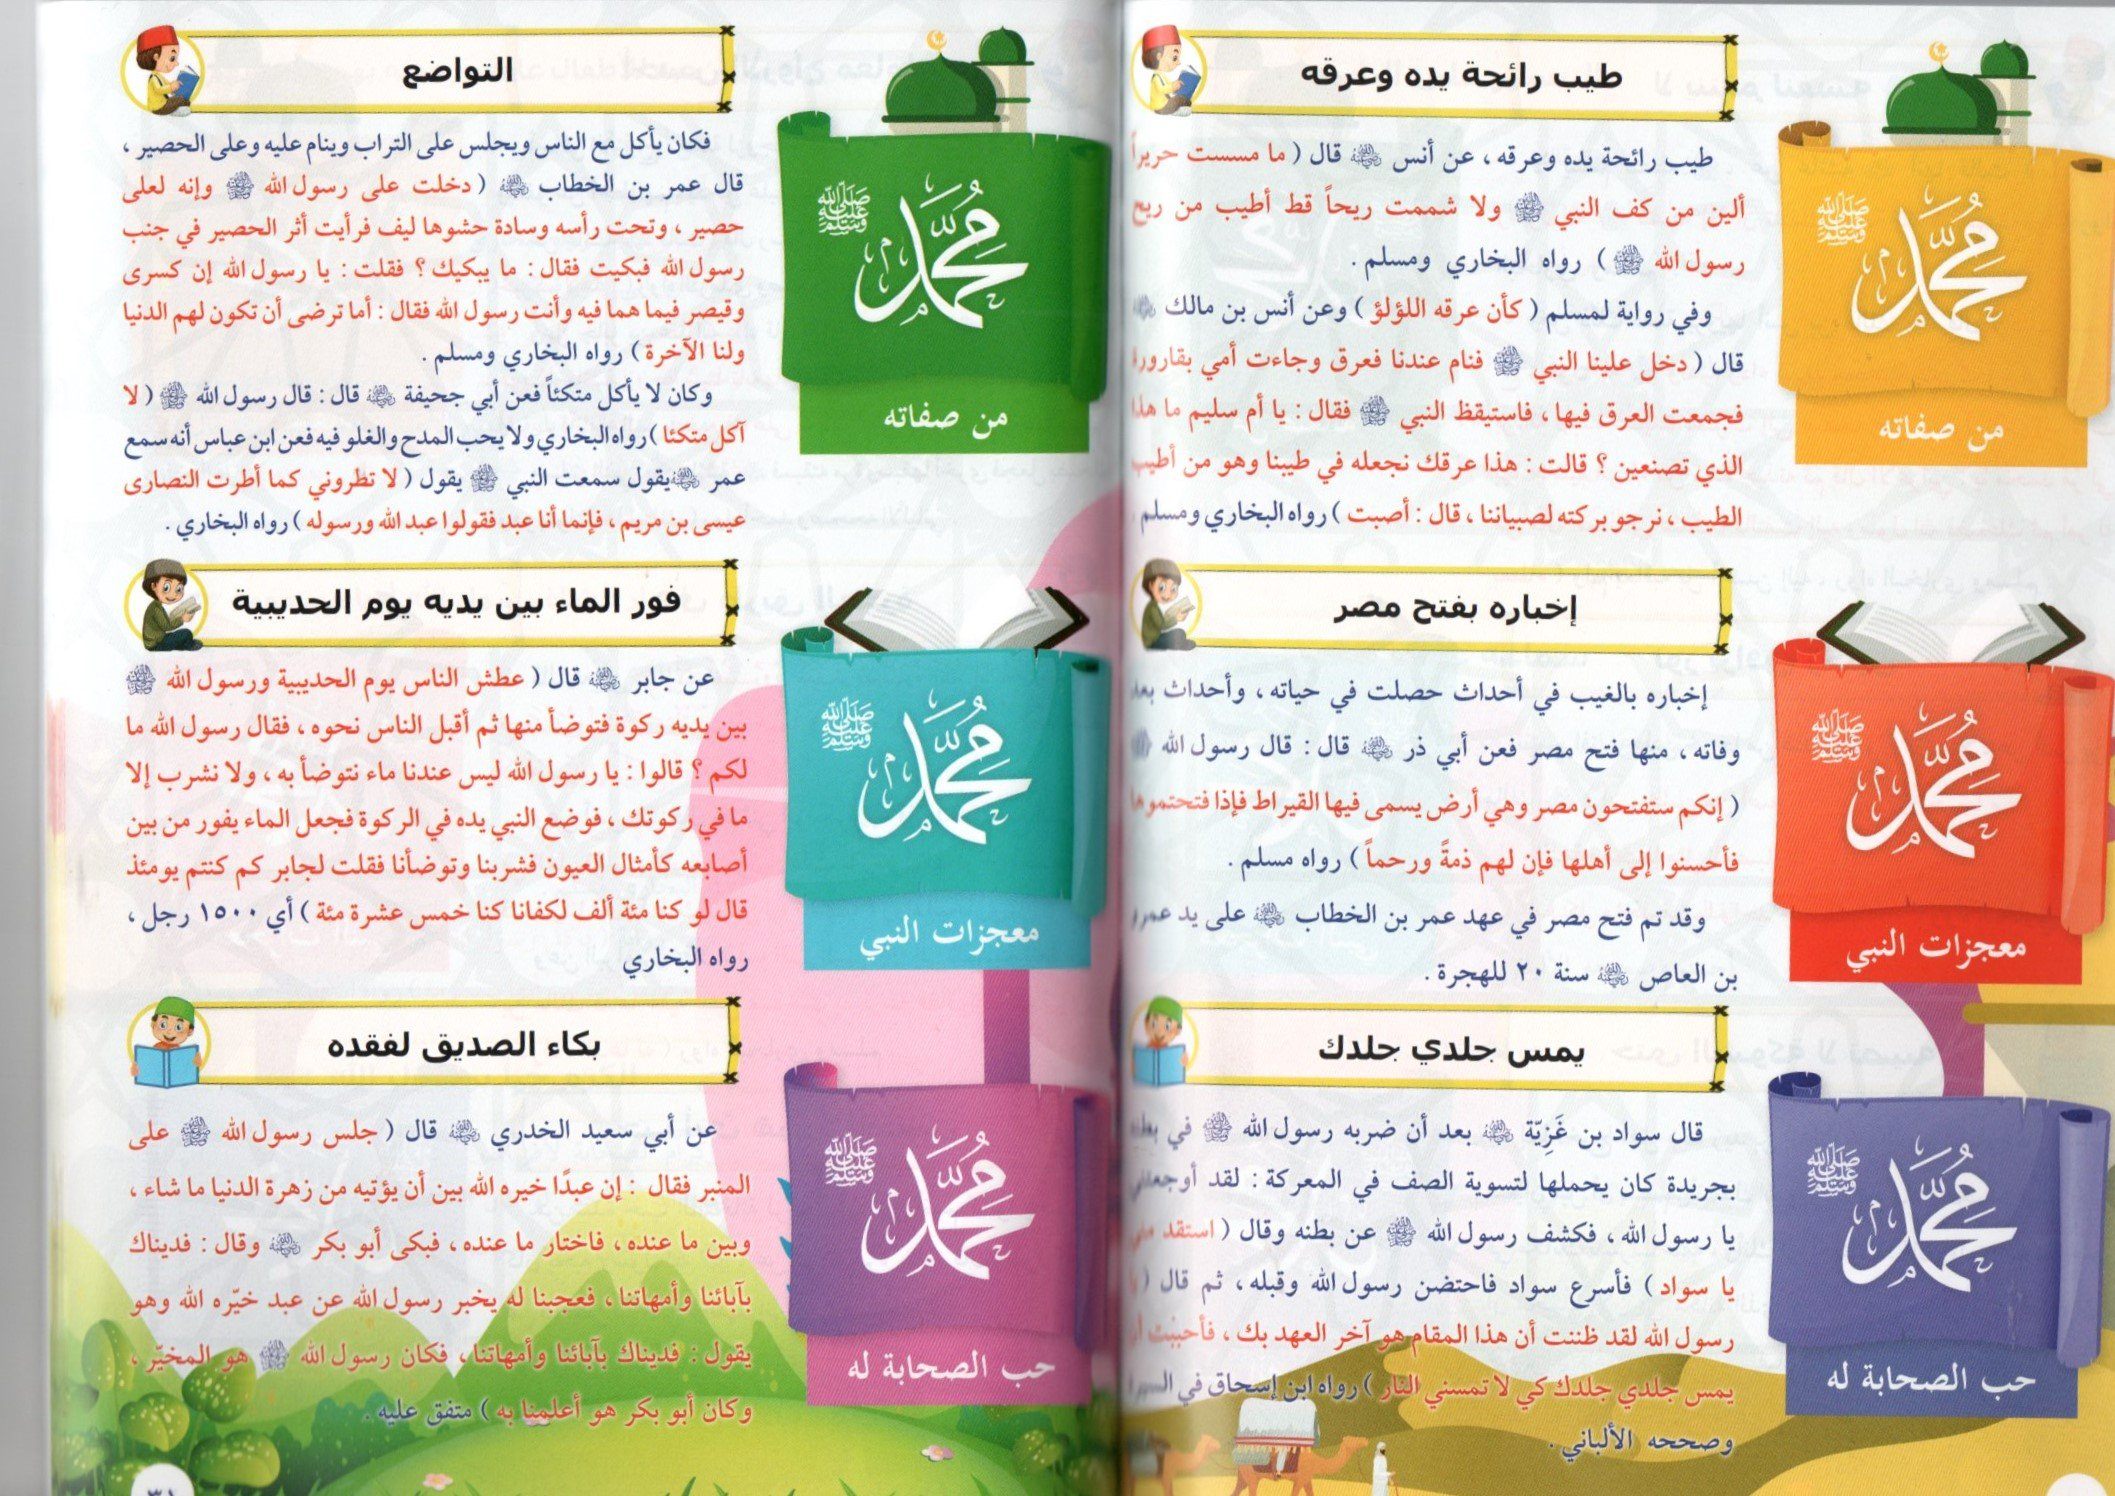 الشمائل النبوية للأطفال كتب أطفال د. علي الجاموس